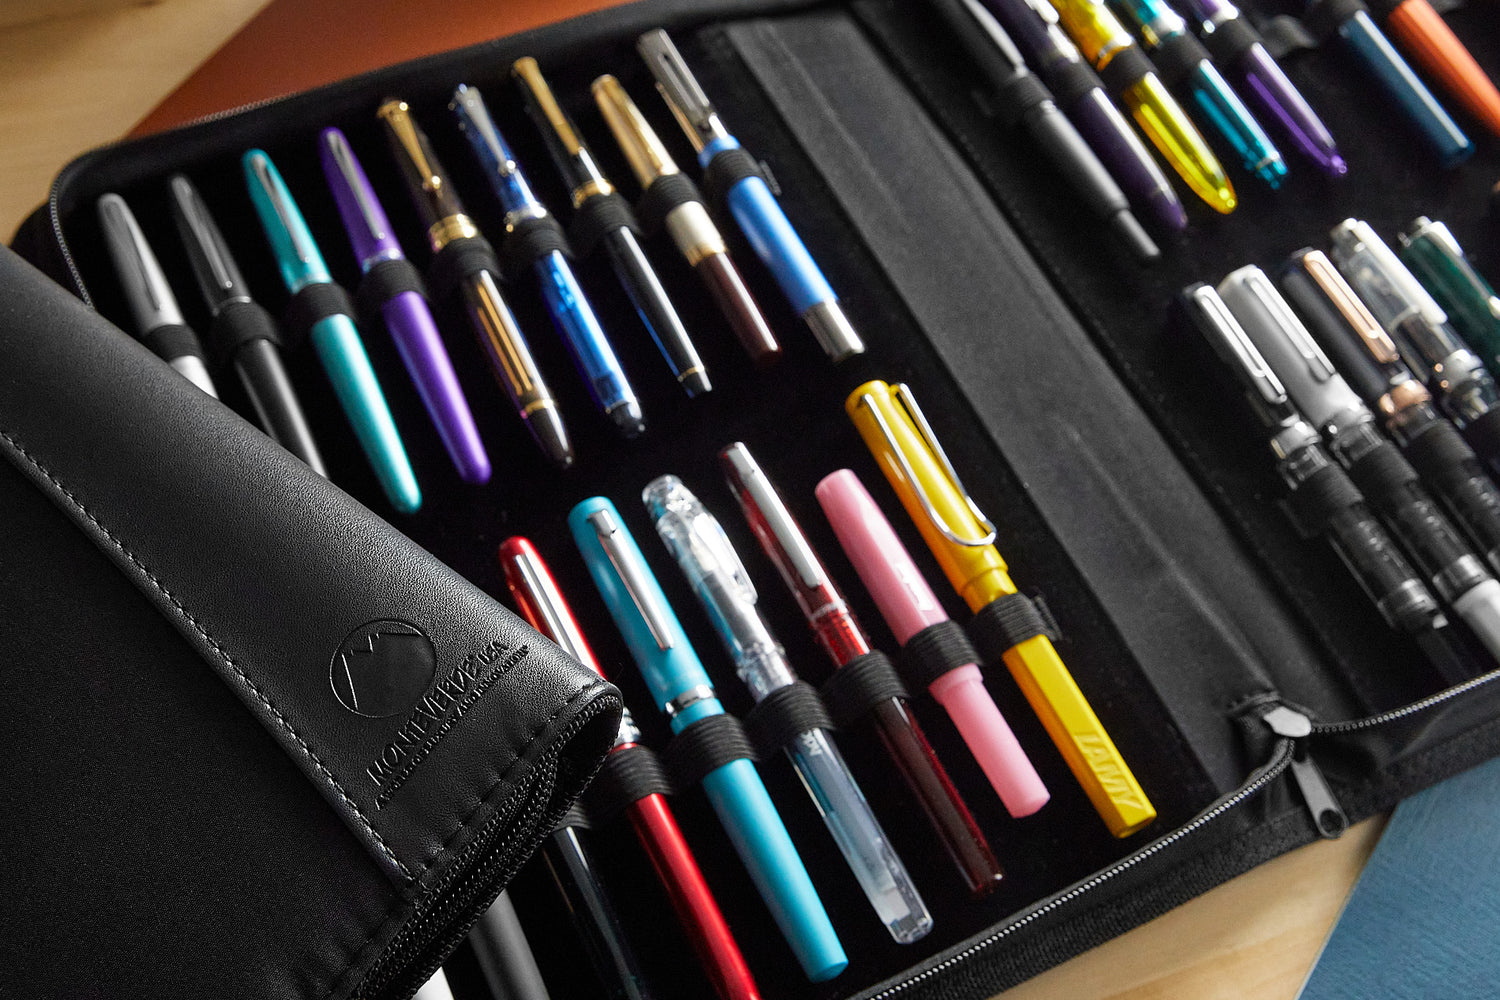 Galen Leather Flap Pen Case for Five Pens - Black